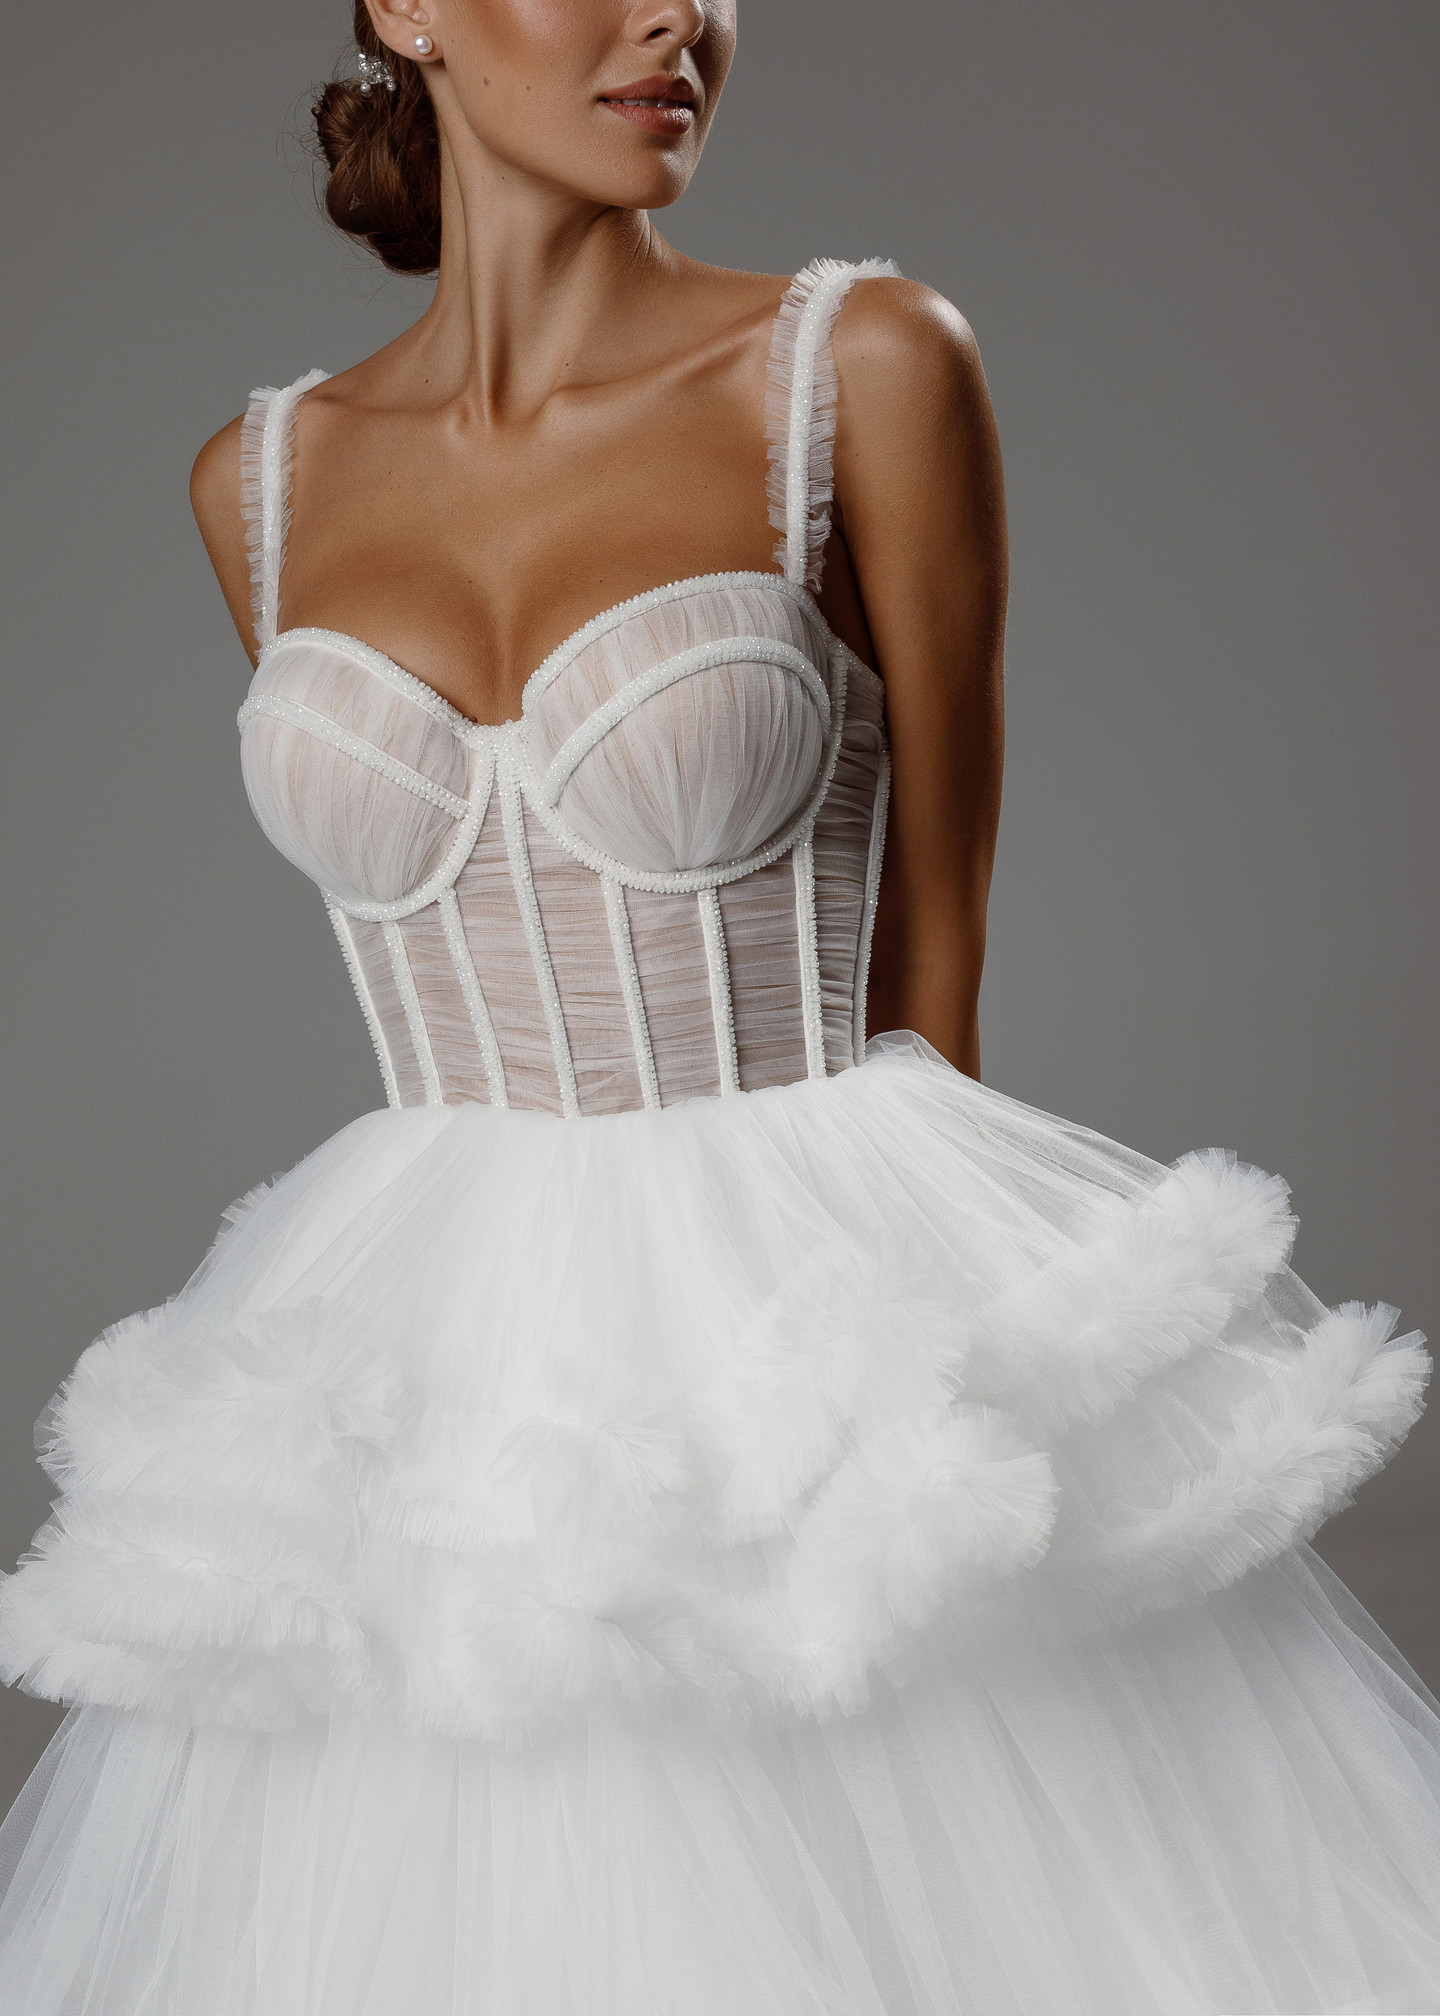 Платье Аврора, 2020, одежда, платье, свадебное, молочно-белый, сетка, вышивка, А-силуэт, шнуровка, архив